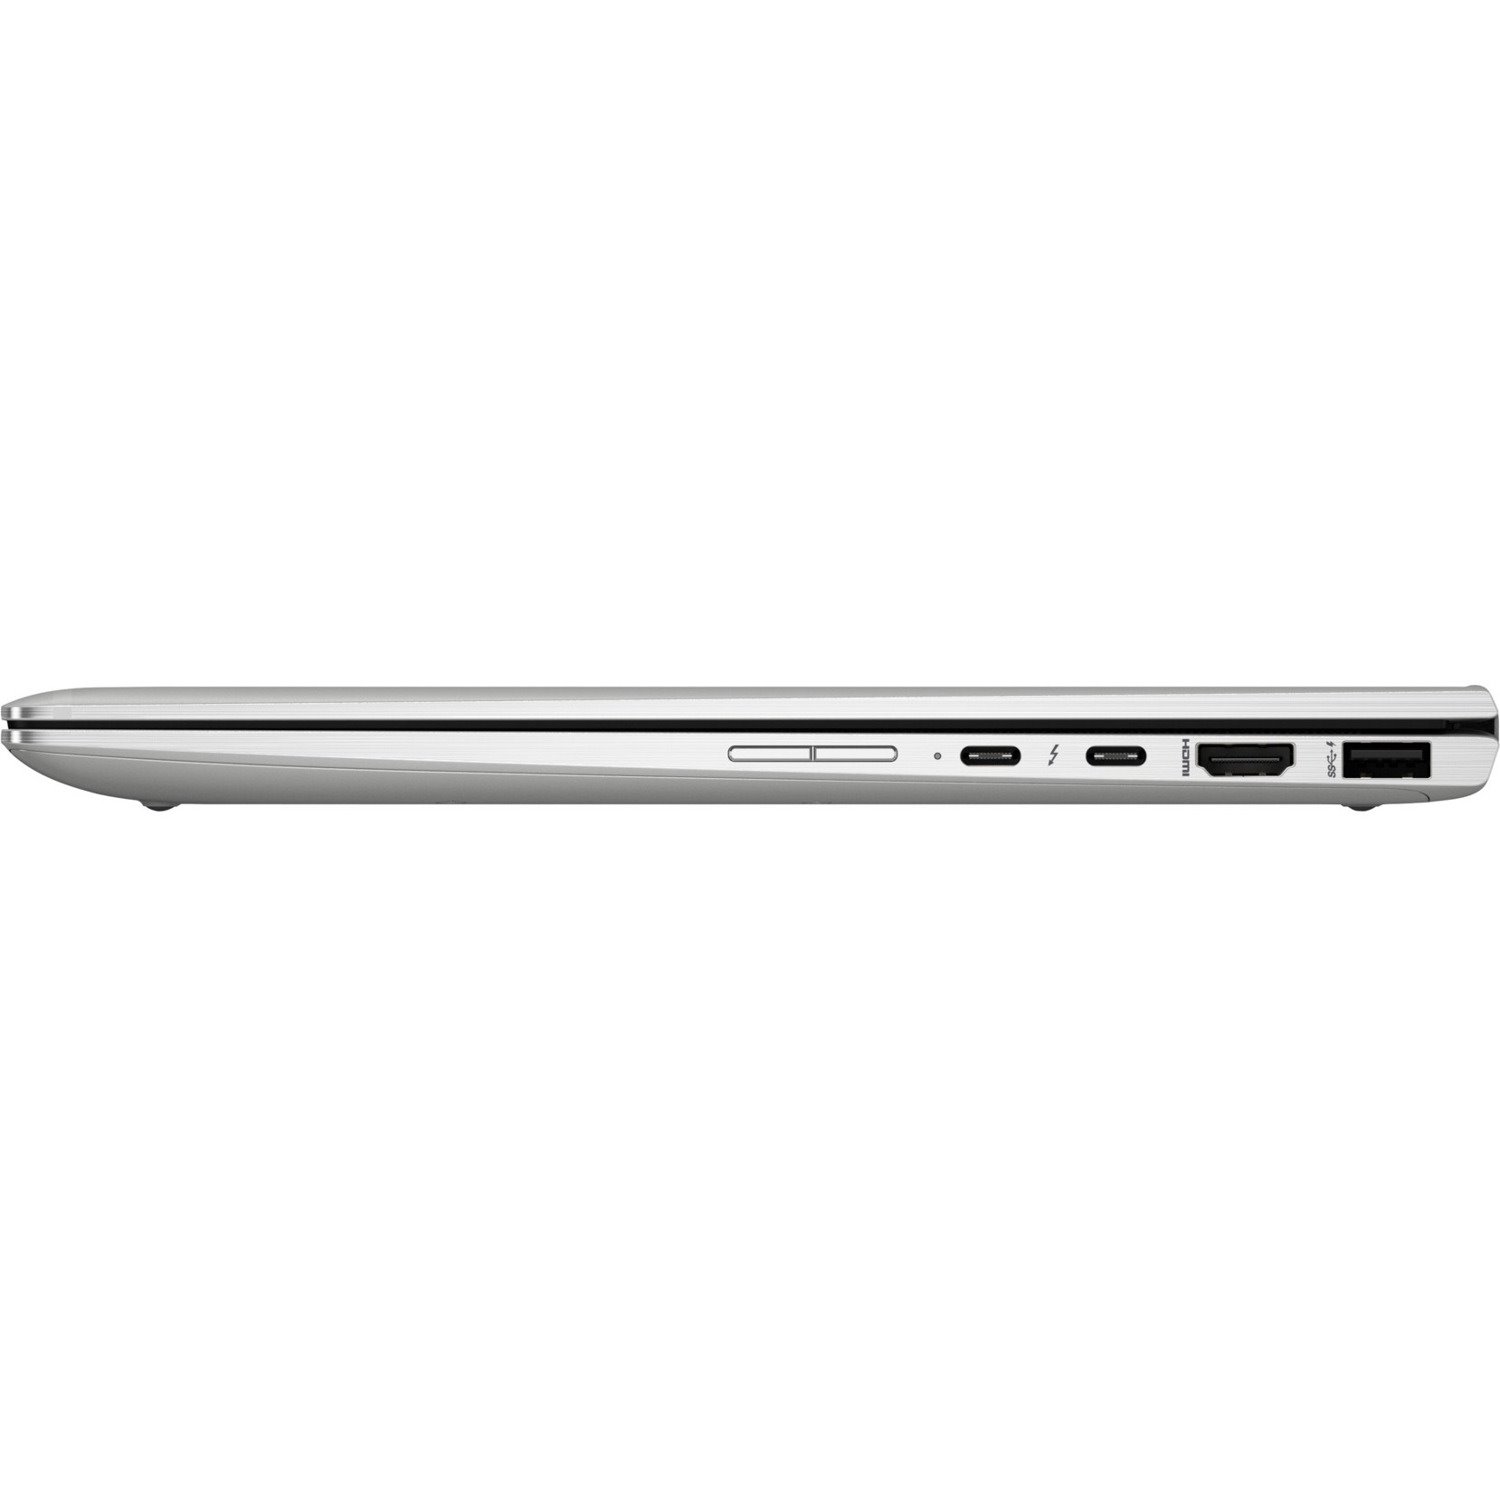 HP EliteBook x360 1040 G6 14" Touchscreen Convertible 2 in 1 Notebook - 1920 x 1080 - Intel Core i5 8th Gen i5-8265U Quad-core (4 Core) 1.60 GHz - 8 GB Total RAM - 256 GB SSD